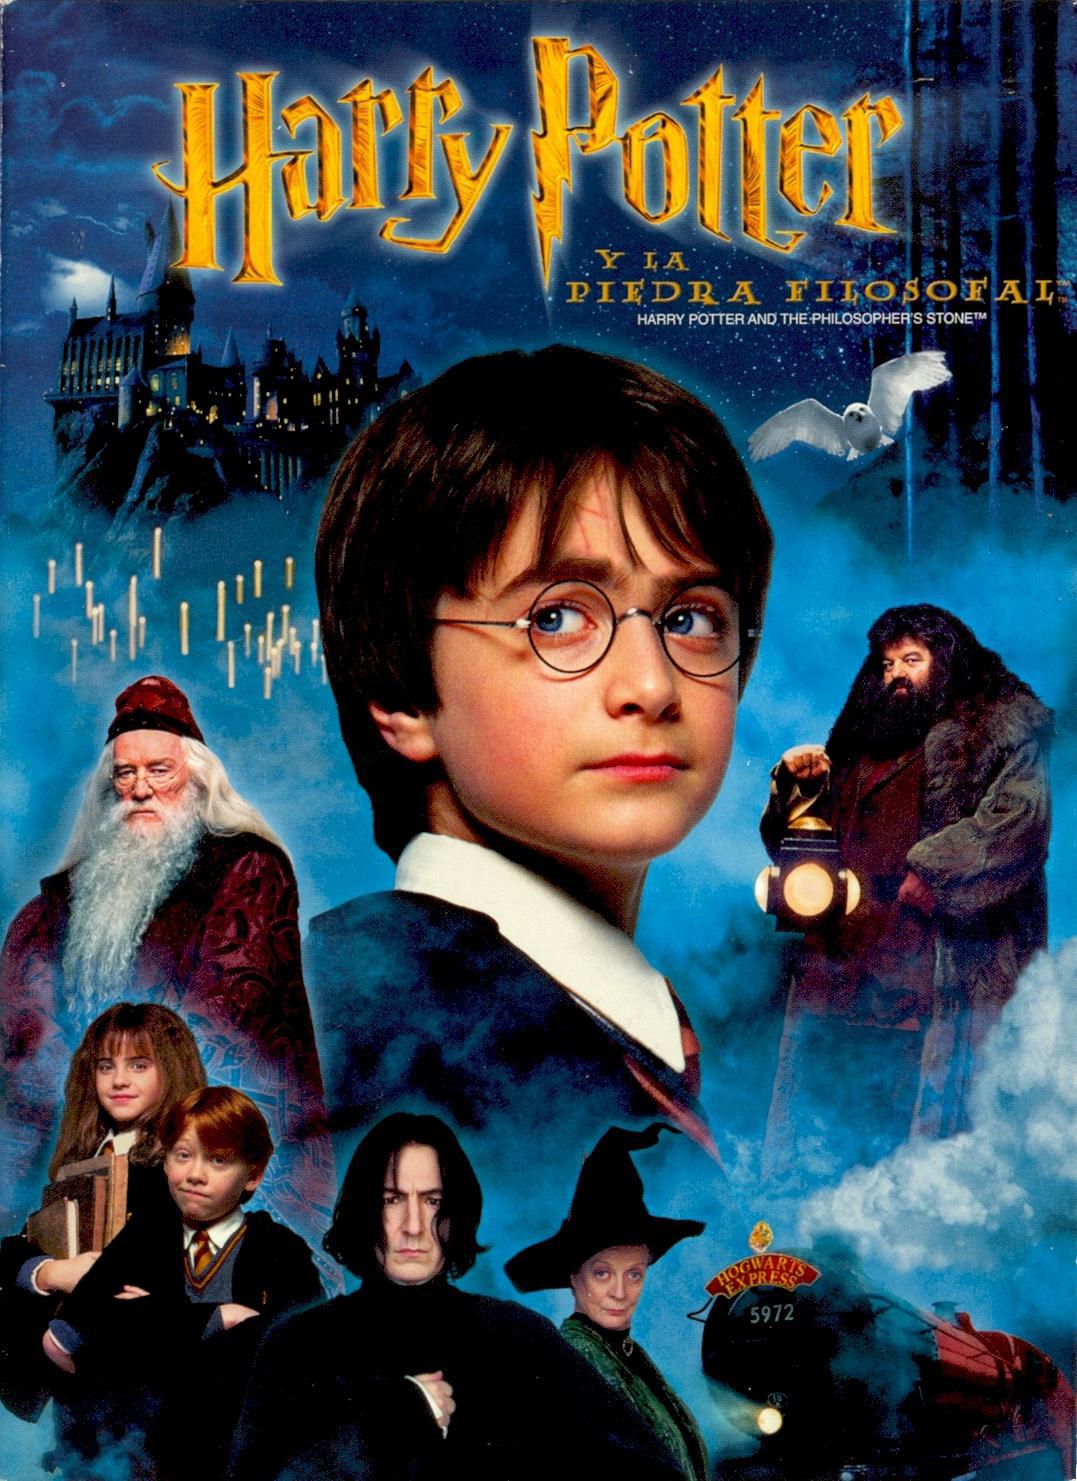 Harry Potter y la Piedra Filosofal regresa a España: listado de cines donde ver la película